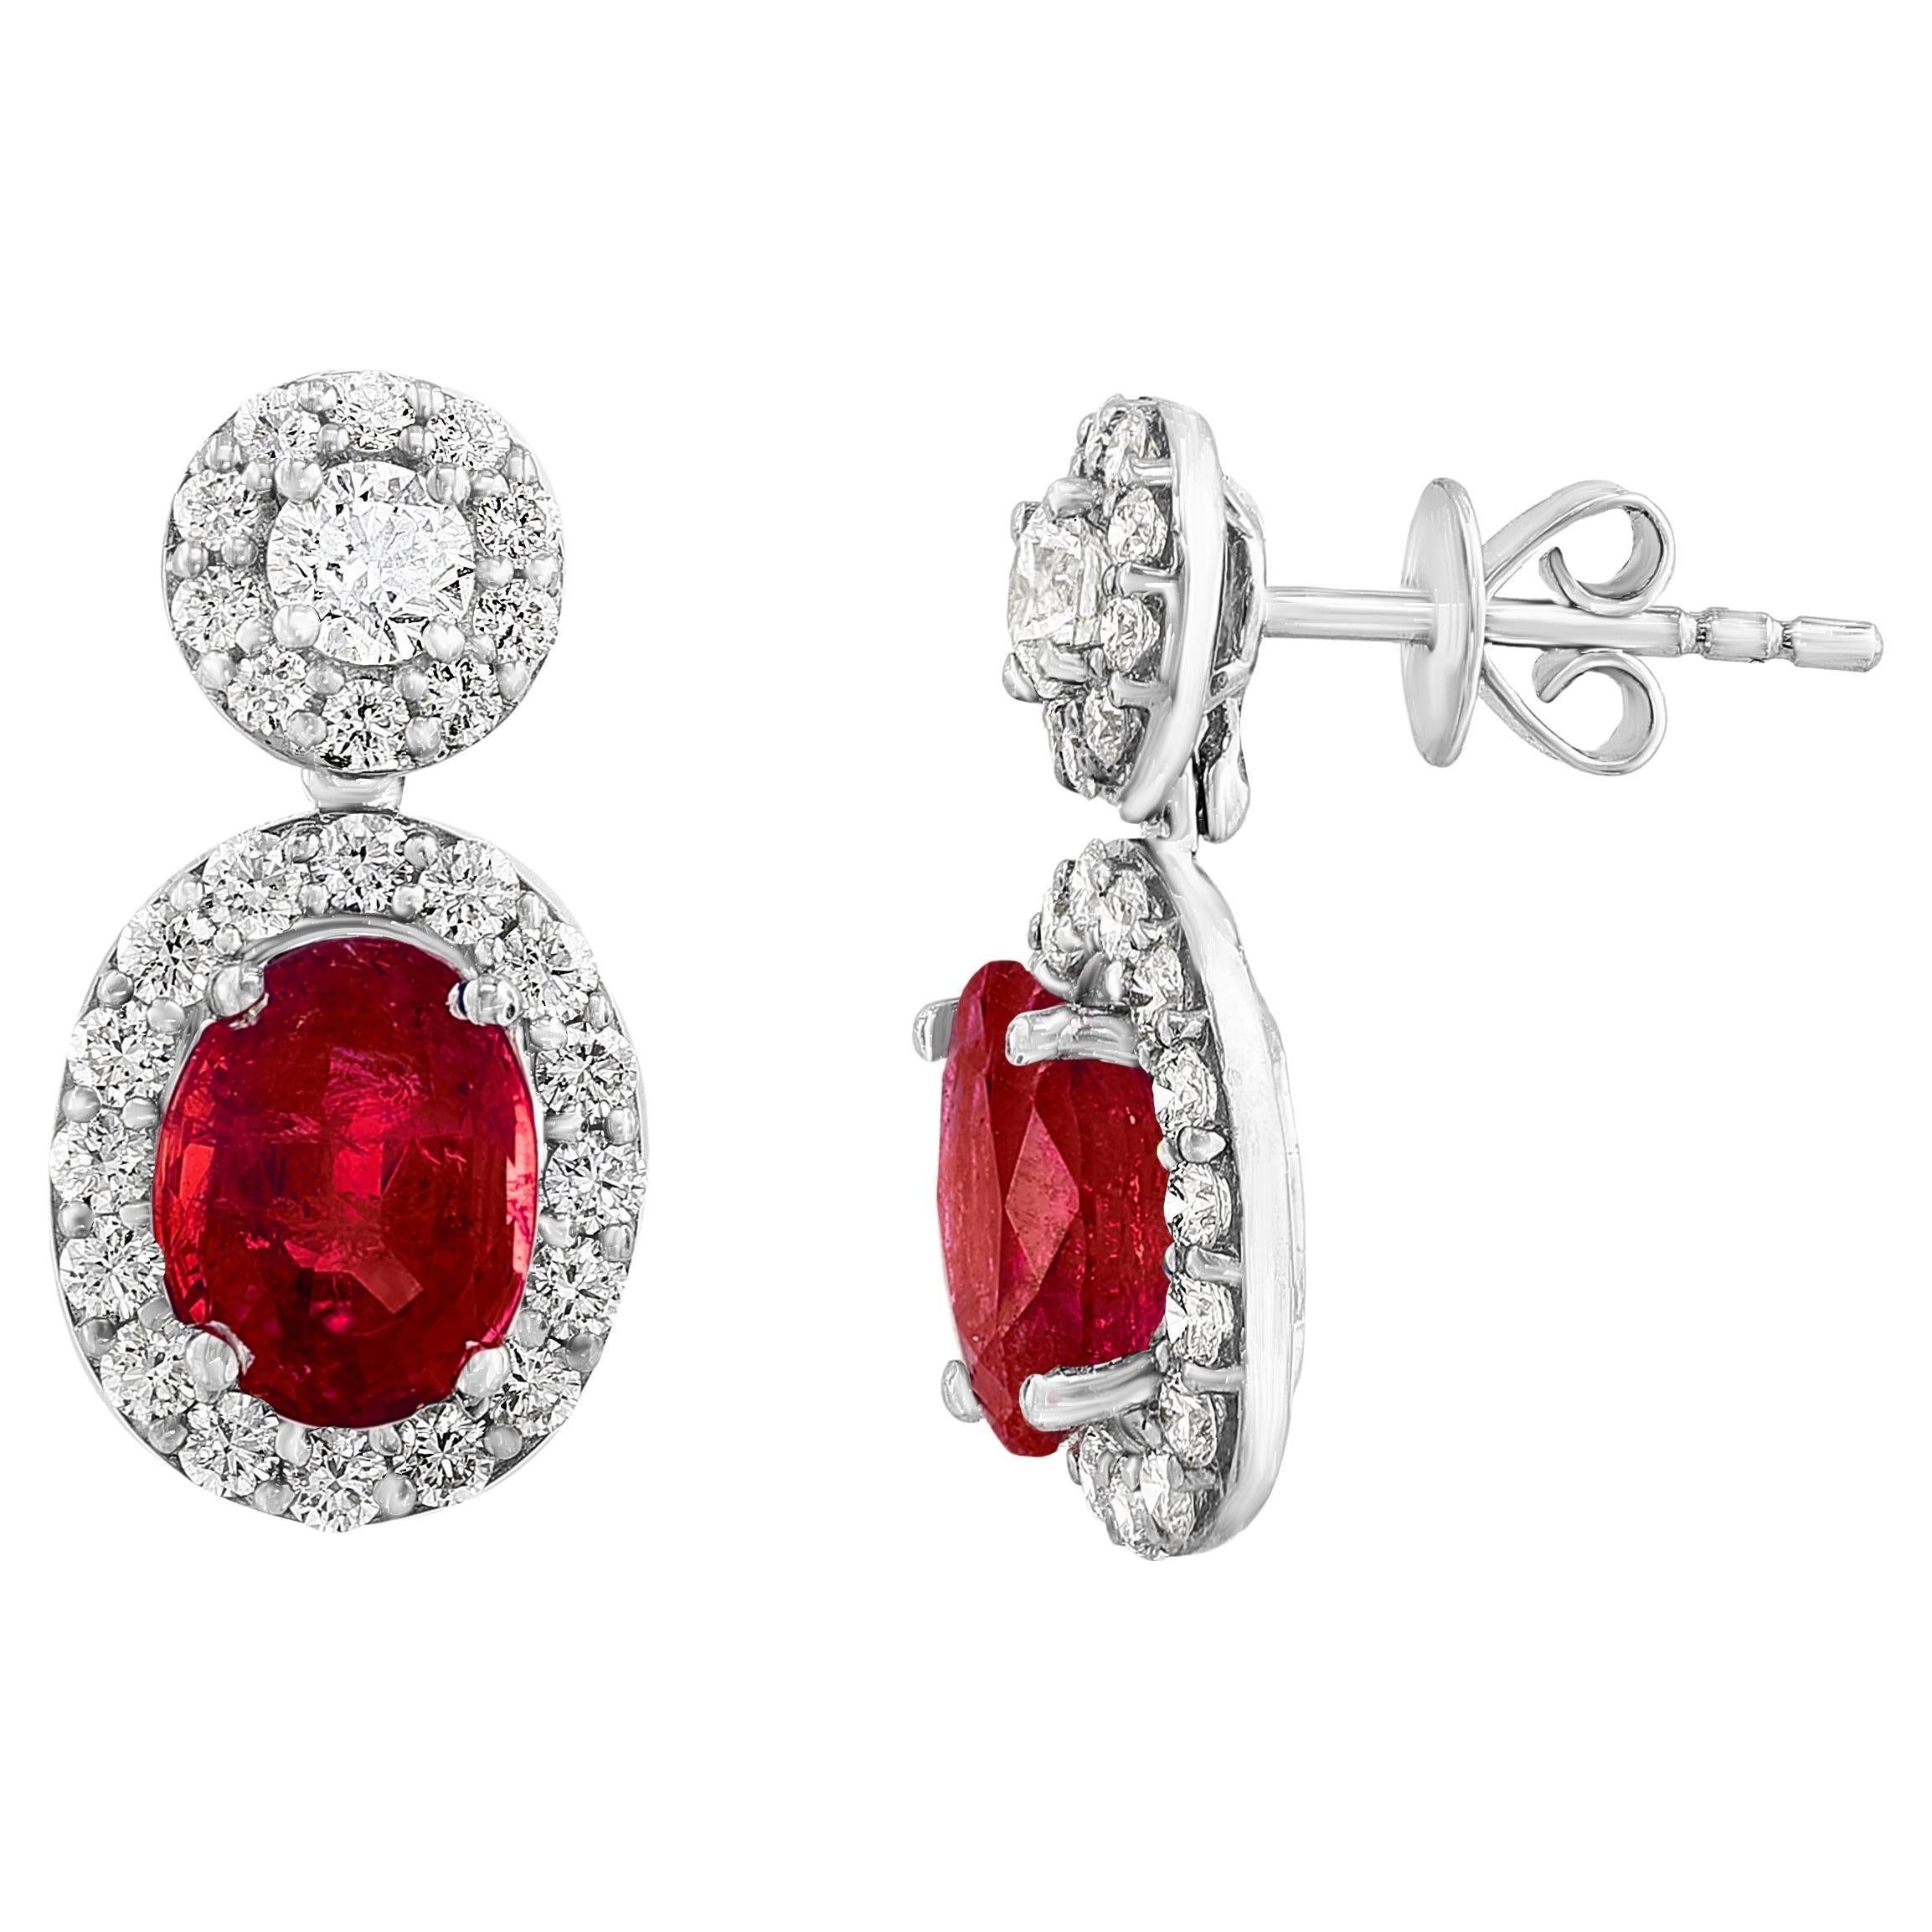 Boucles d'oreilles pendantes en or blanc 18 carats de 2,32 carats de rubis de taille ovale et de diamants